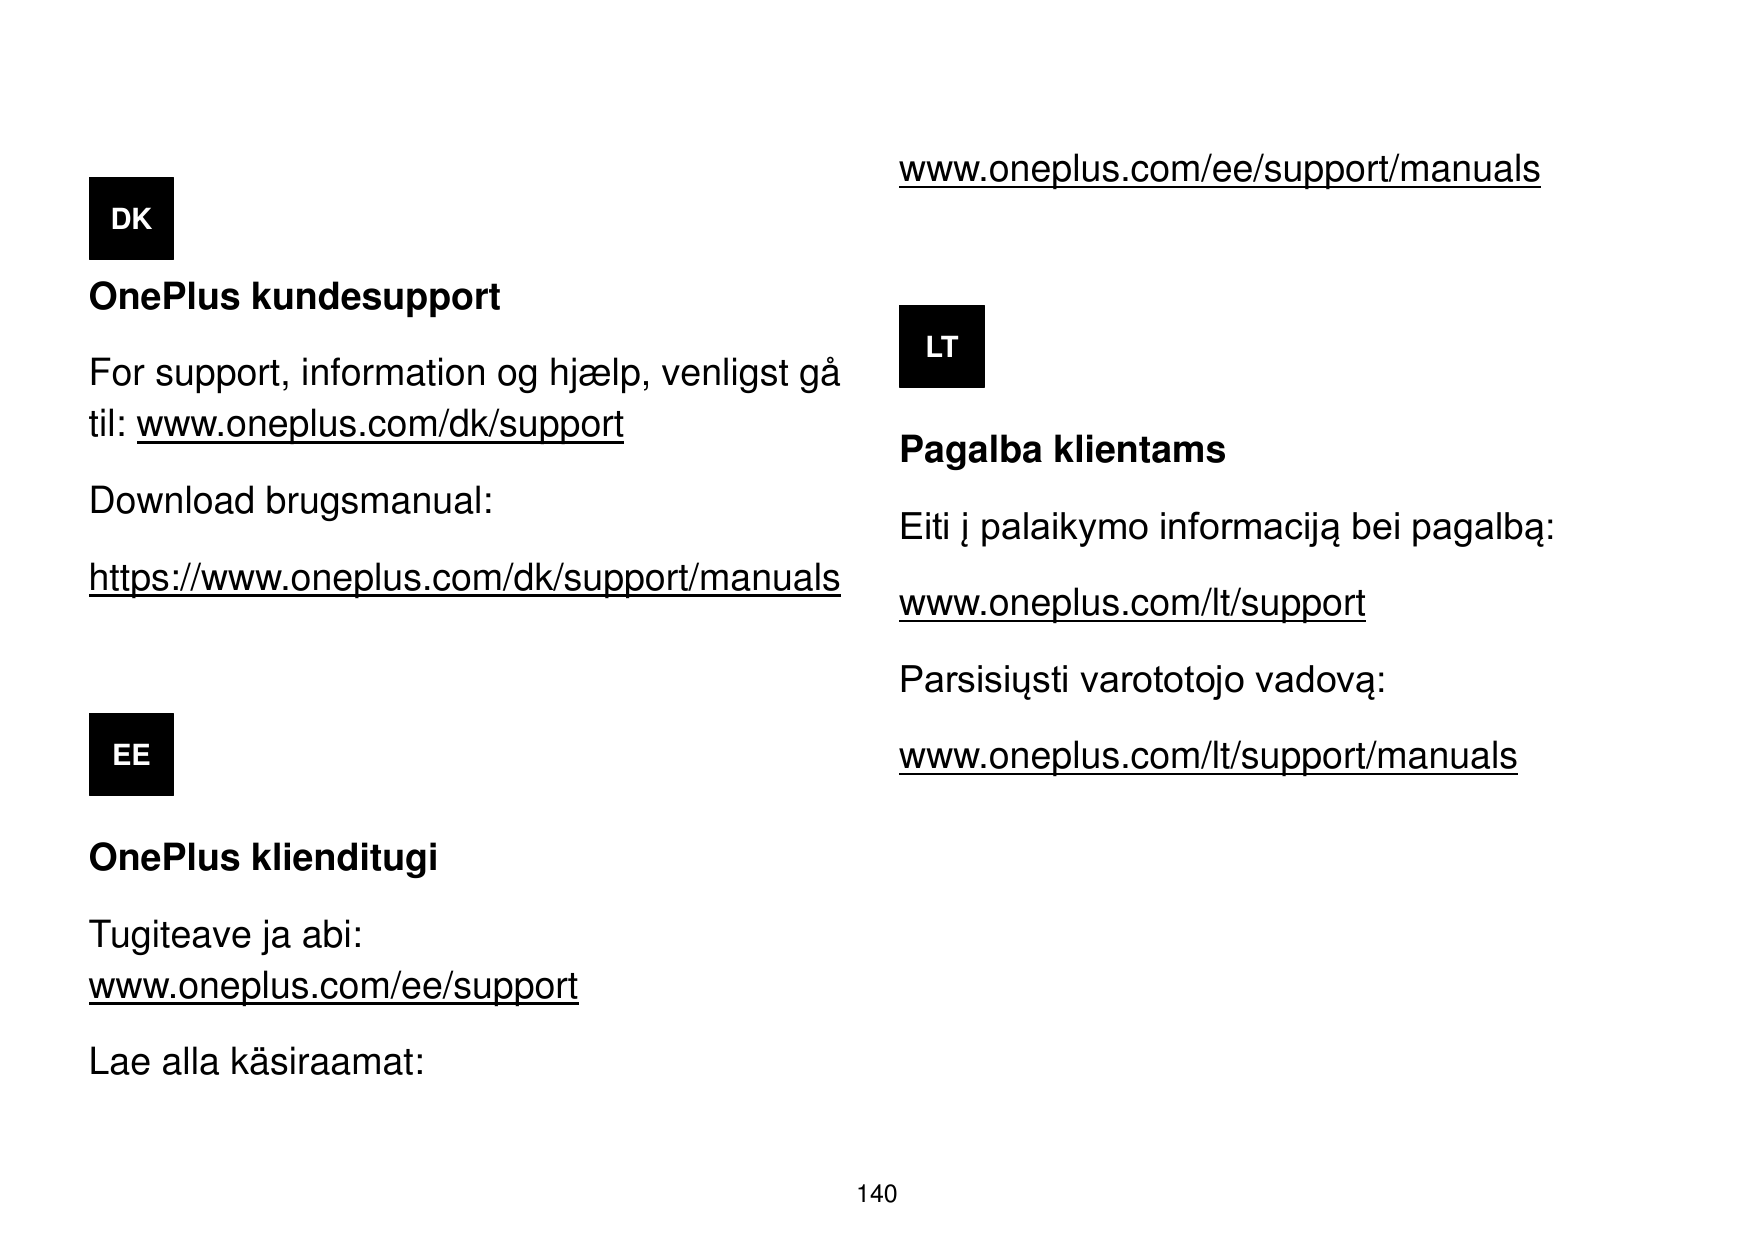 www.oneplus.com/ee/support/manualsDKOnePlus kundesupportLTFor support, information og hjæ lp, venligst gåtil: www.oneplus.com/dk